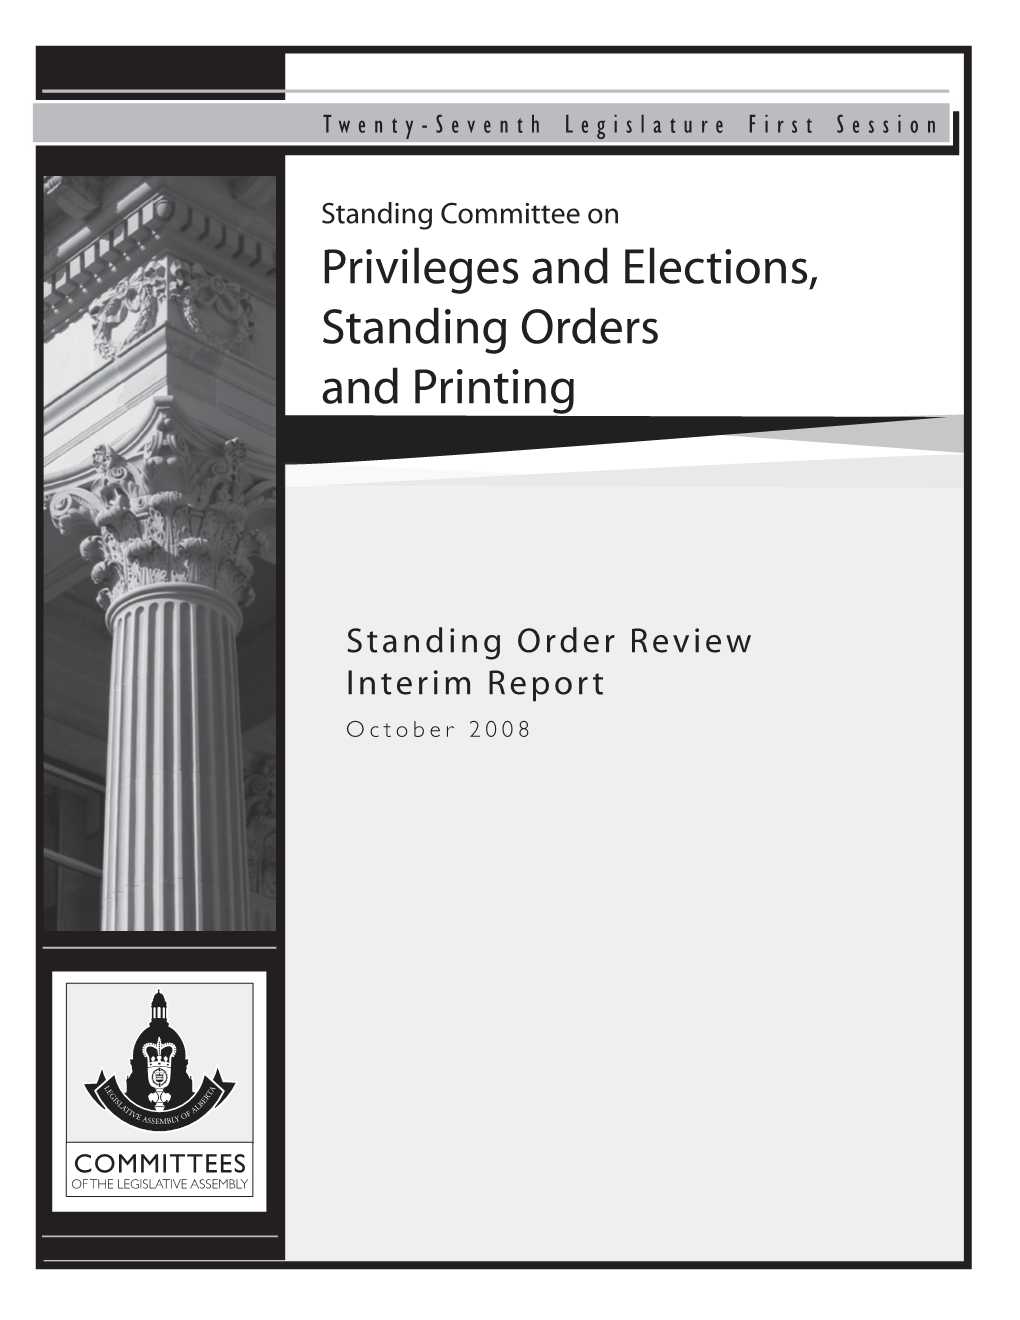 Standing Order Review Interim Report, October 2008